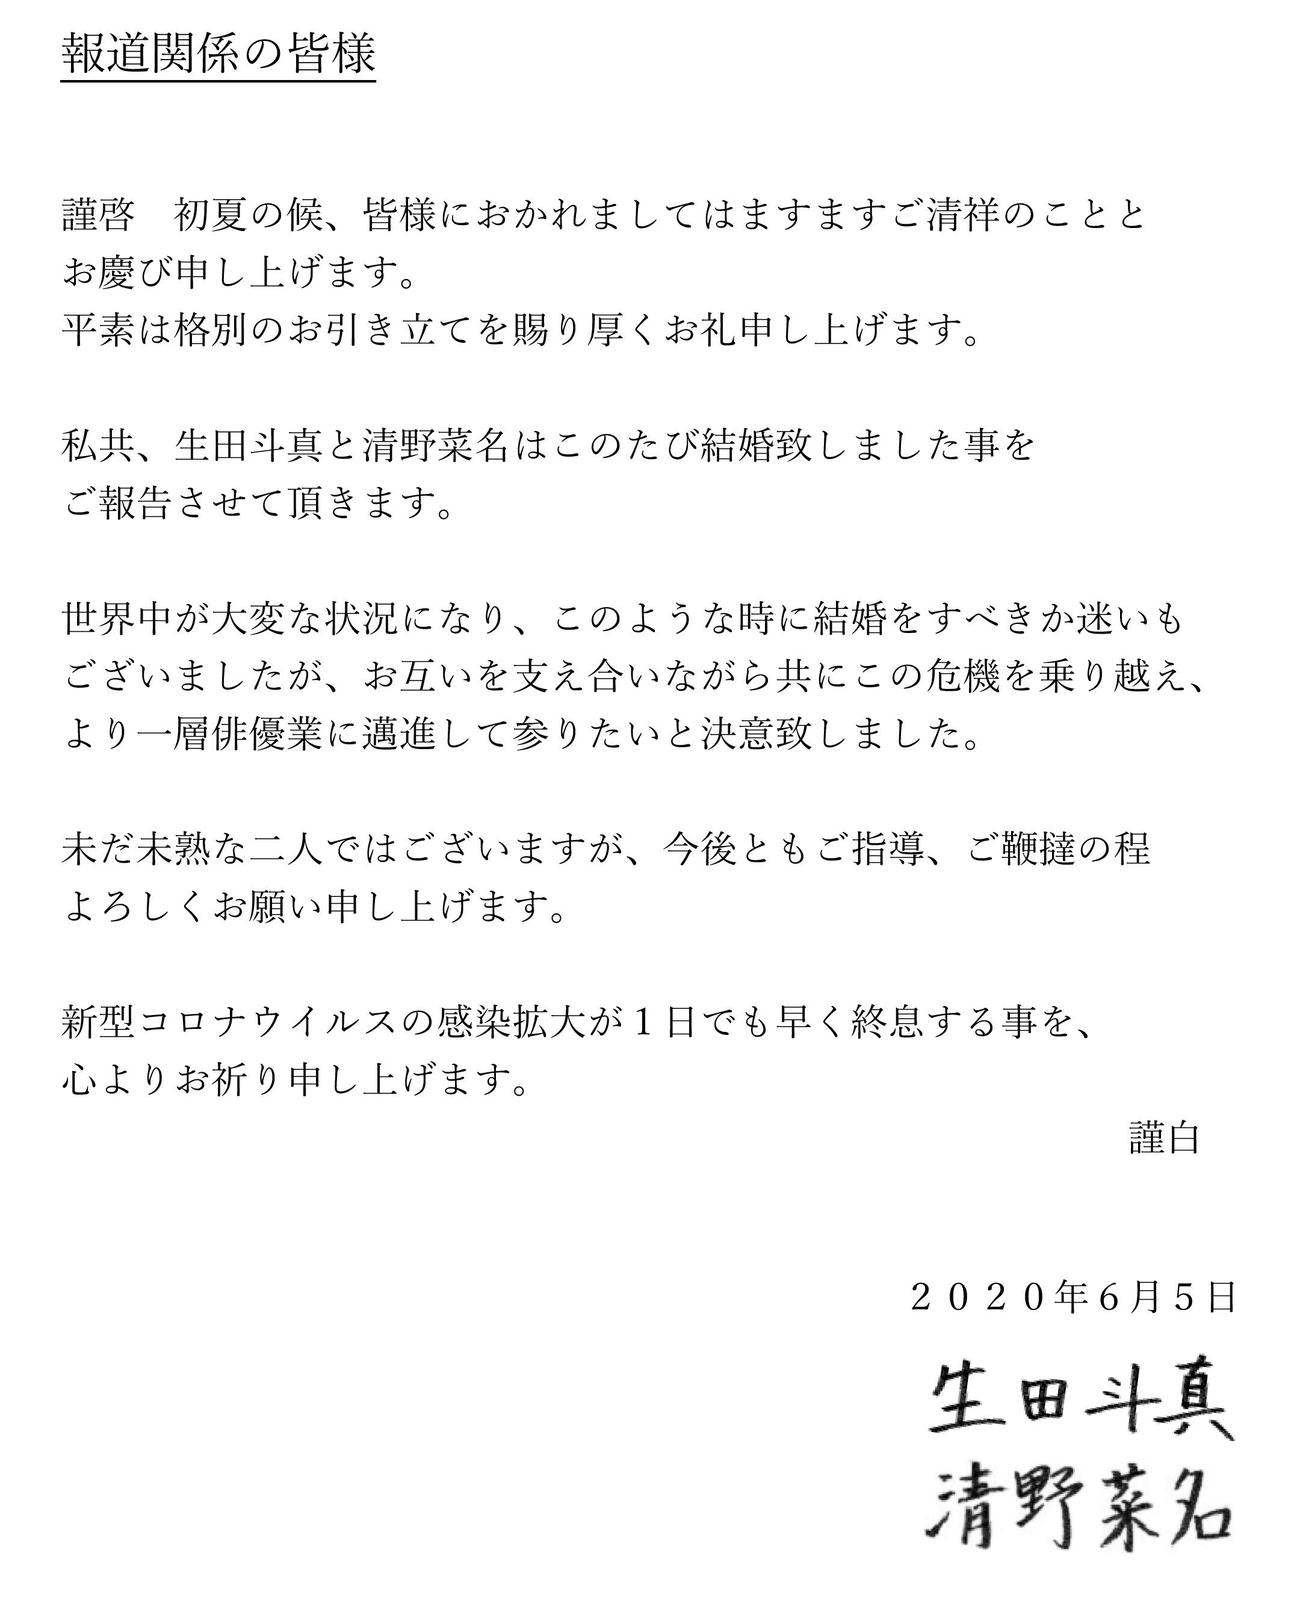 生田斗真と清野菜名の連名で届いた結婚を報告するマスコミ各社に送った文書